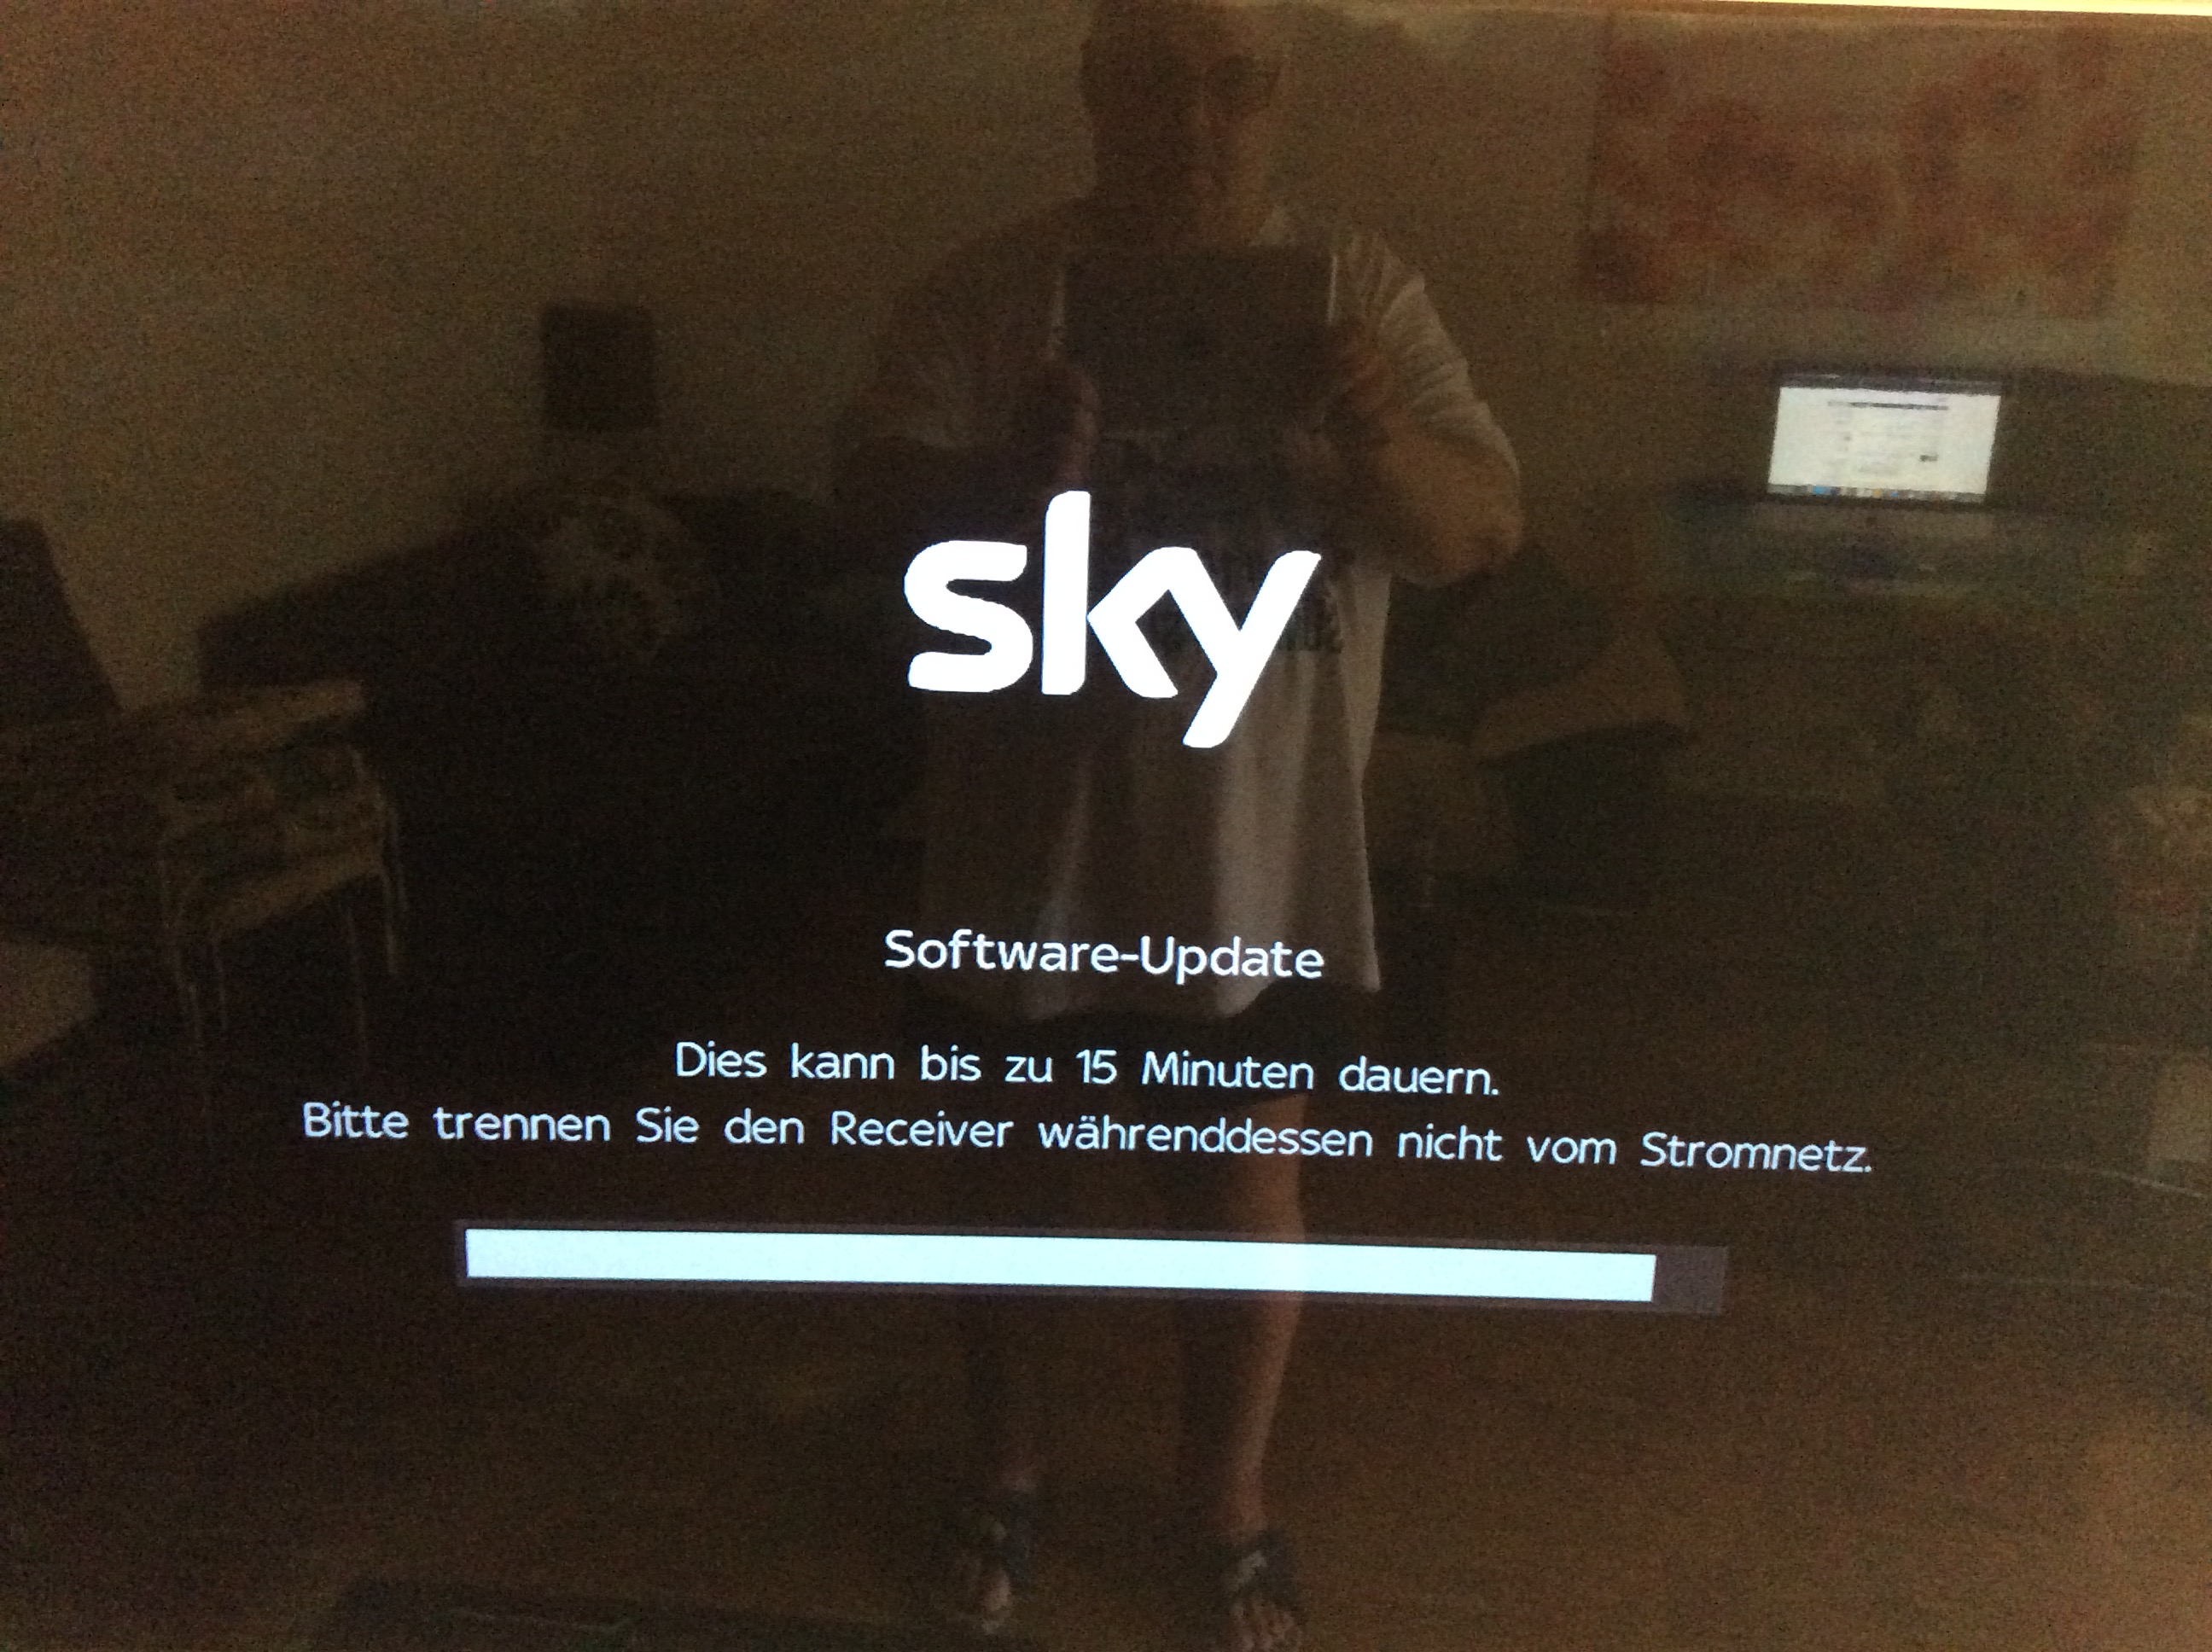 Sky Q Receiver funktioniert nicht mehr. - Sky Community